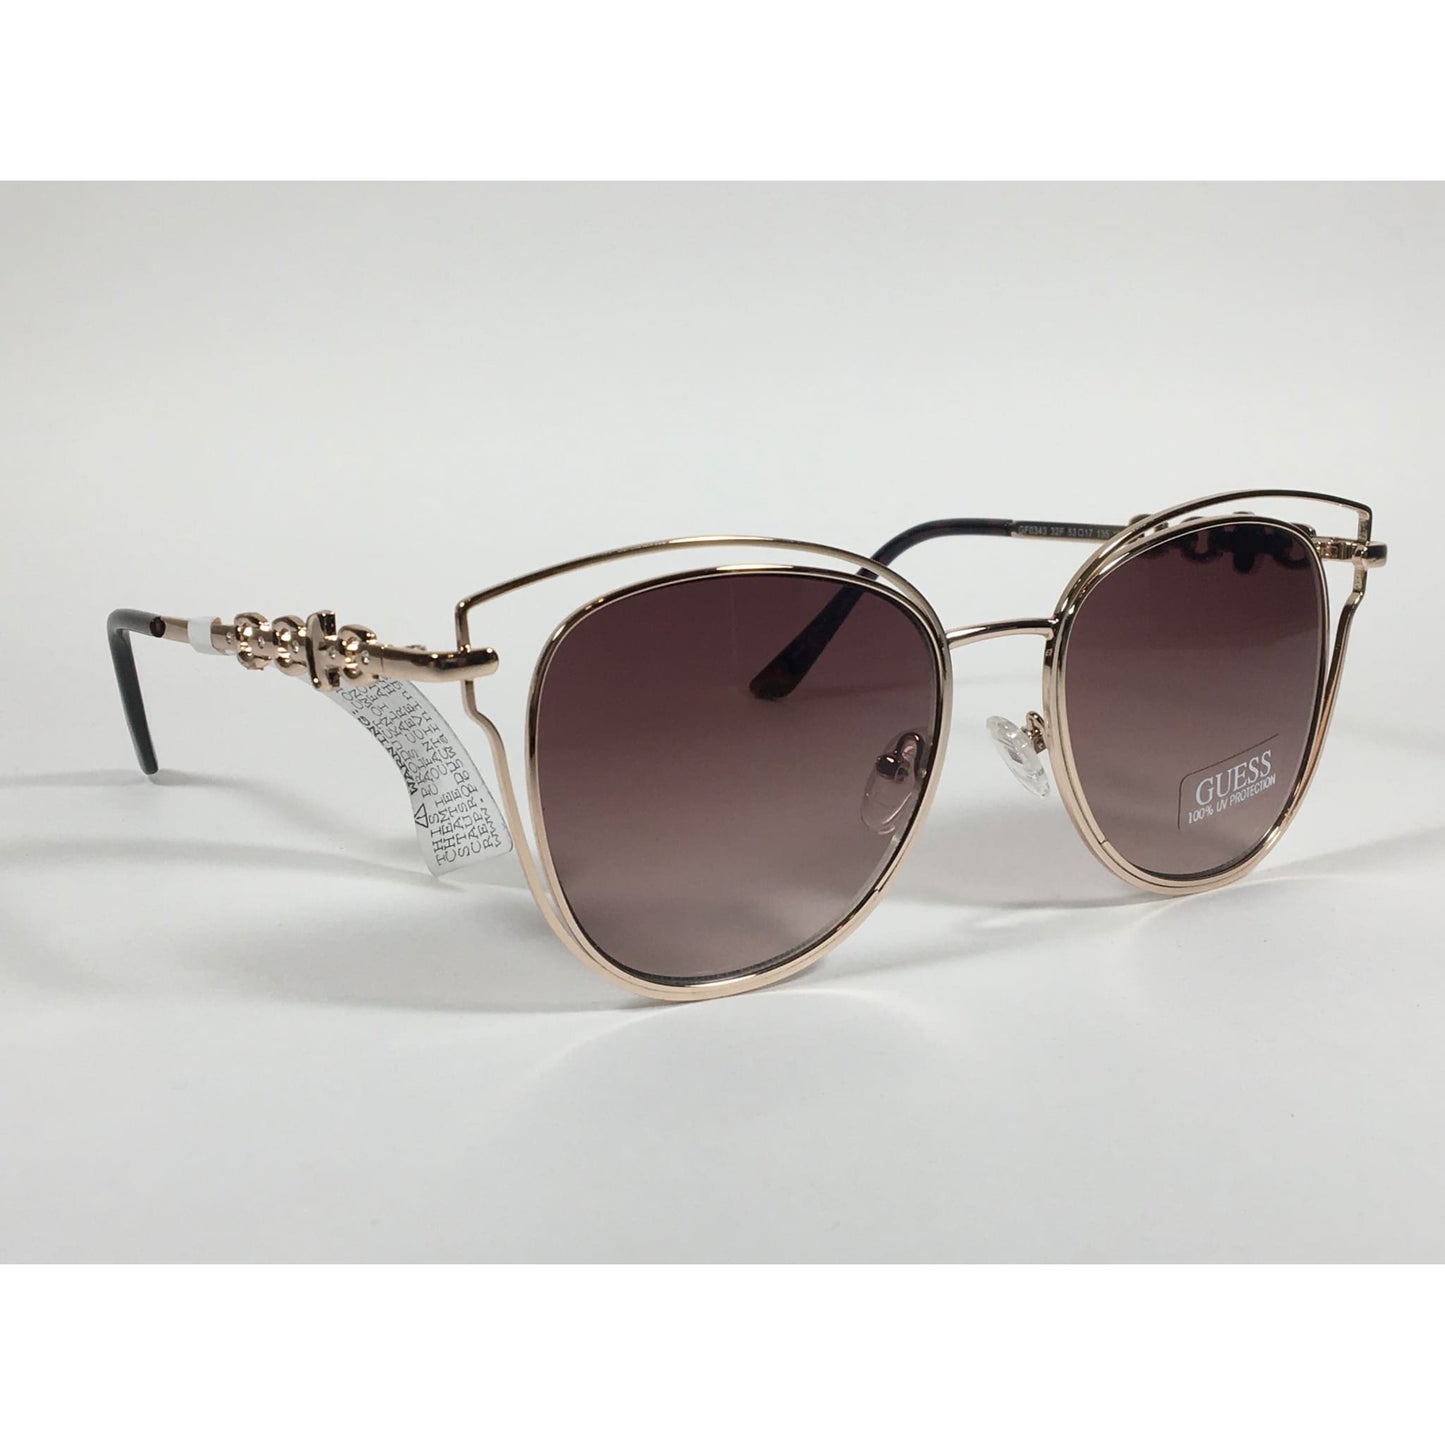 Guess Cat Eye Sunglasses Rose Gold Metal Brown Gradient Lens GF0343 32F - Sunglasses